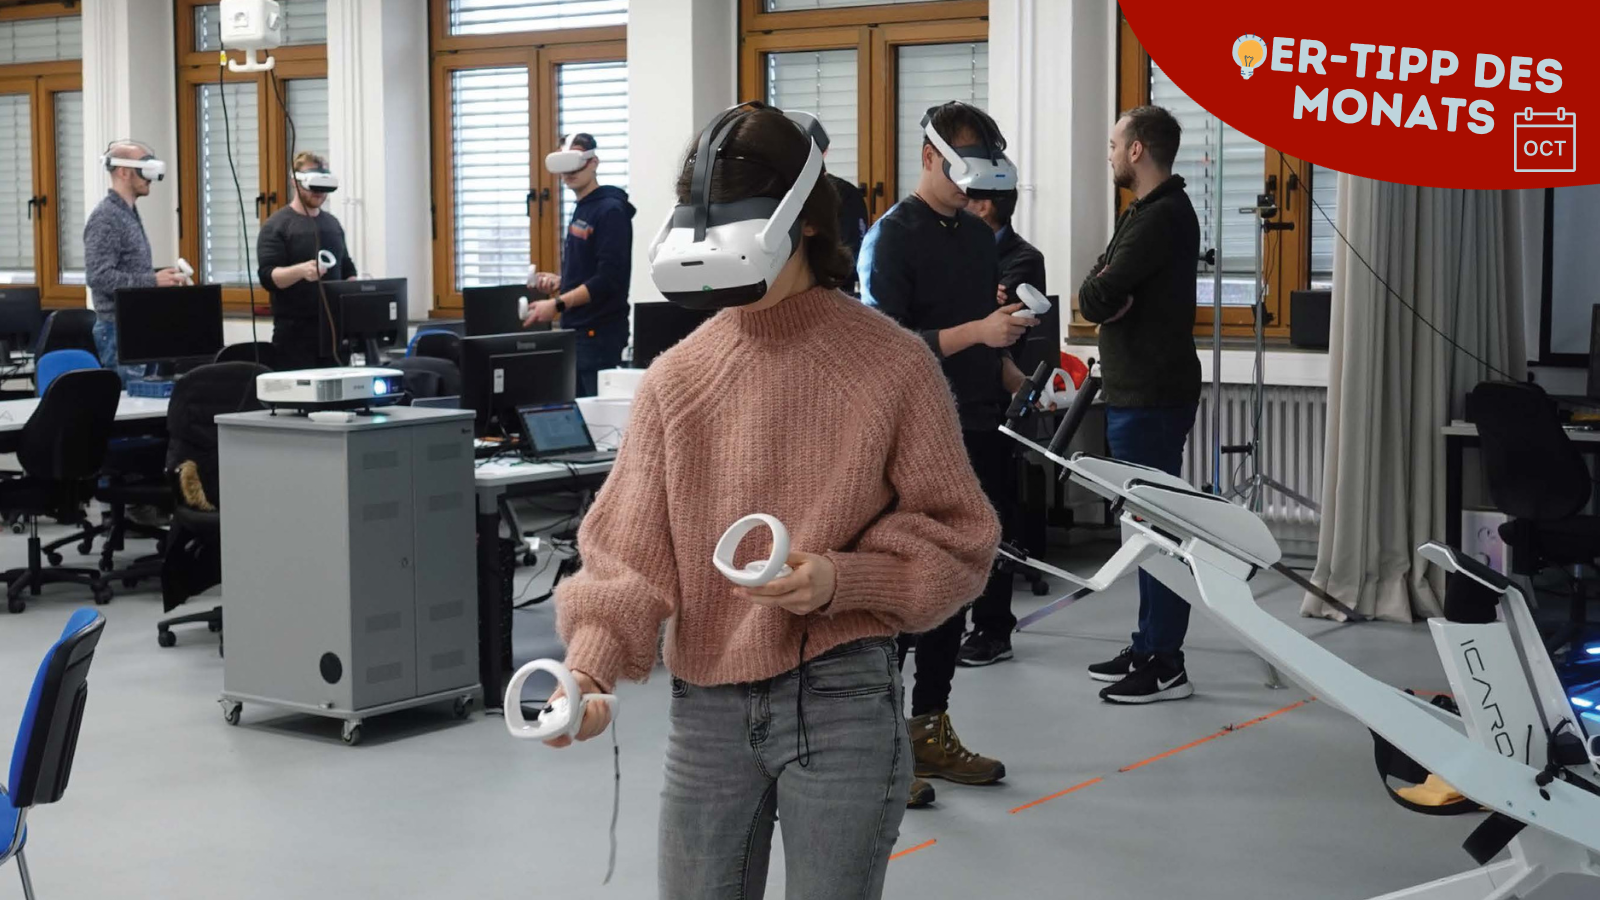 Studentin mit VR-Headset und zwei Controllern in einem Seminarraum